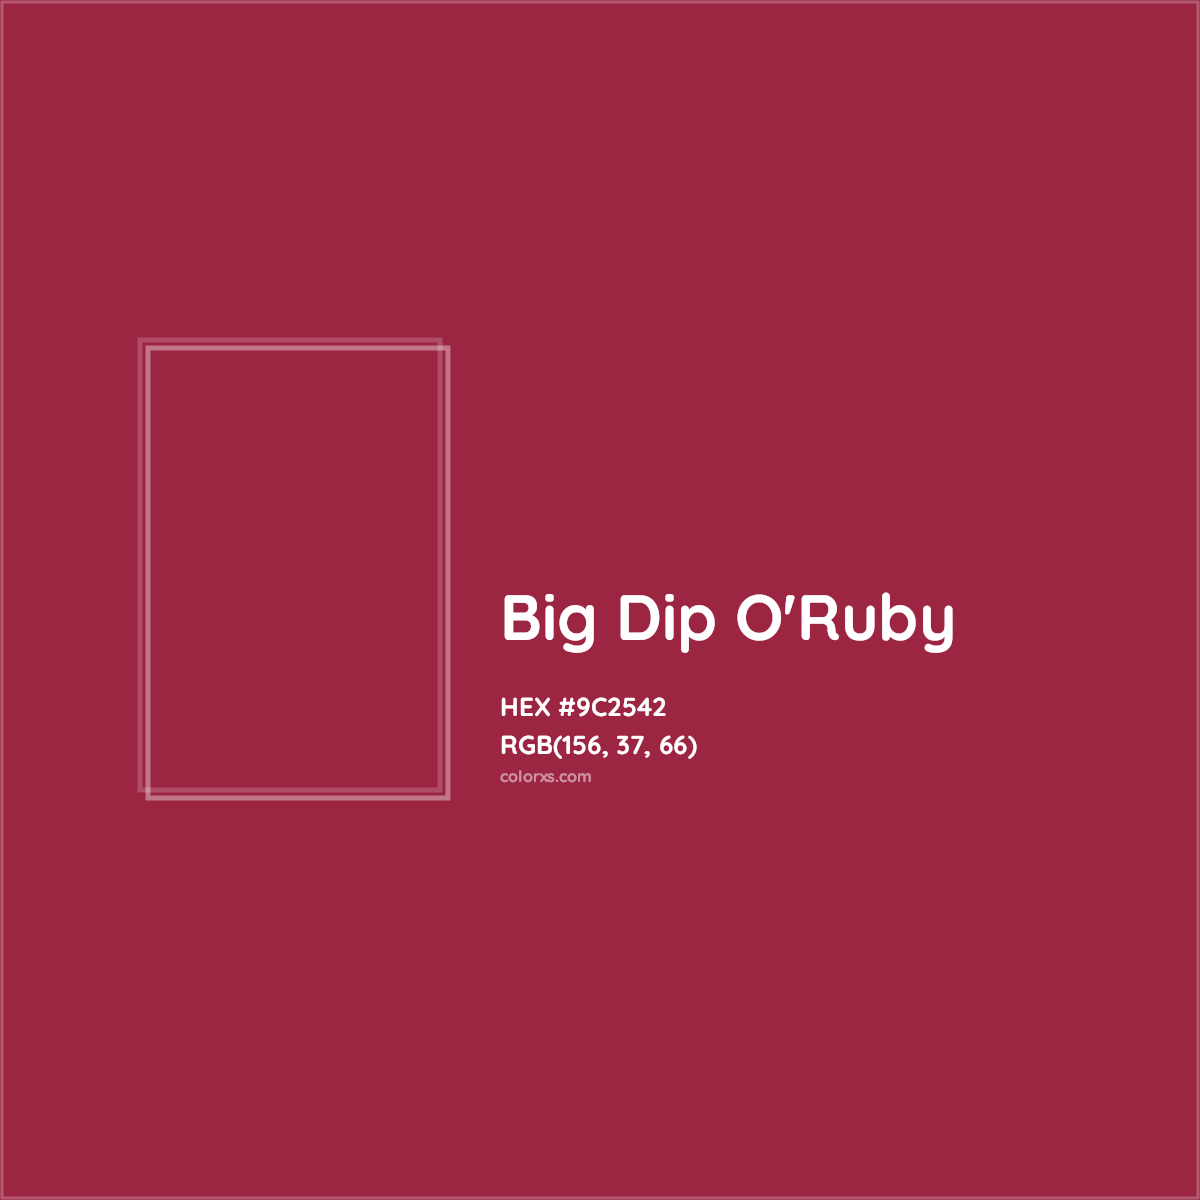 HEX #9C2542 Big Dip O'Ruby Color Crayola Crayons - Color Code